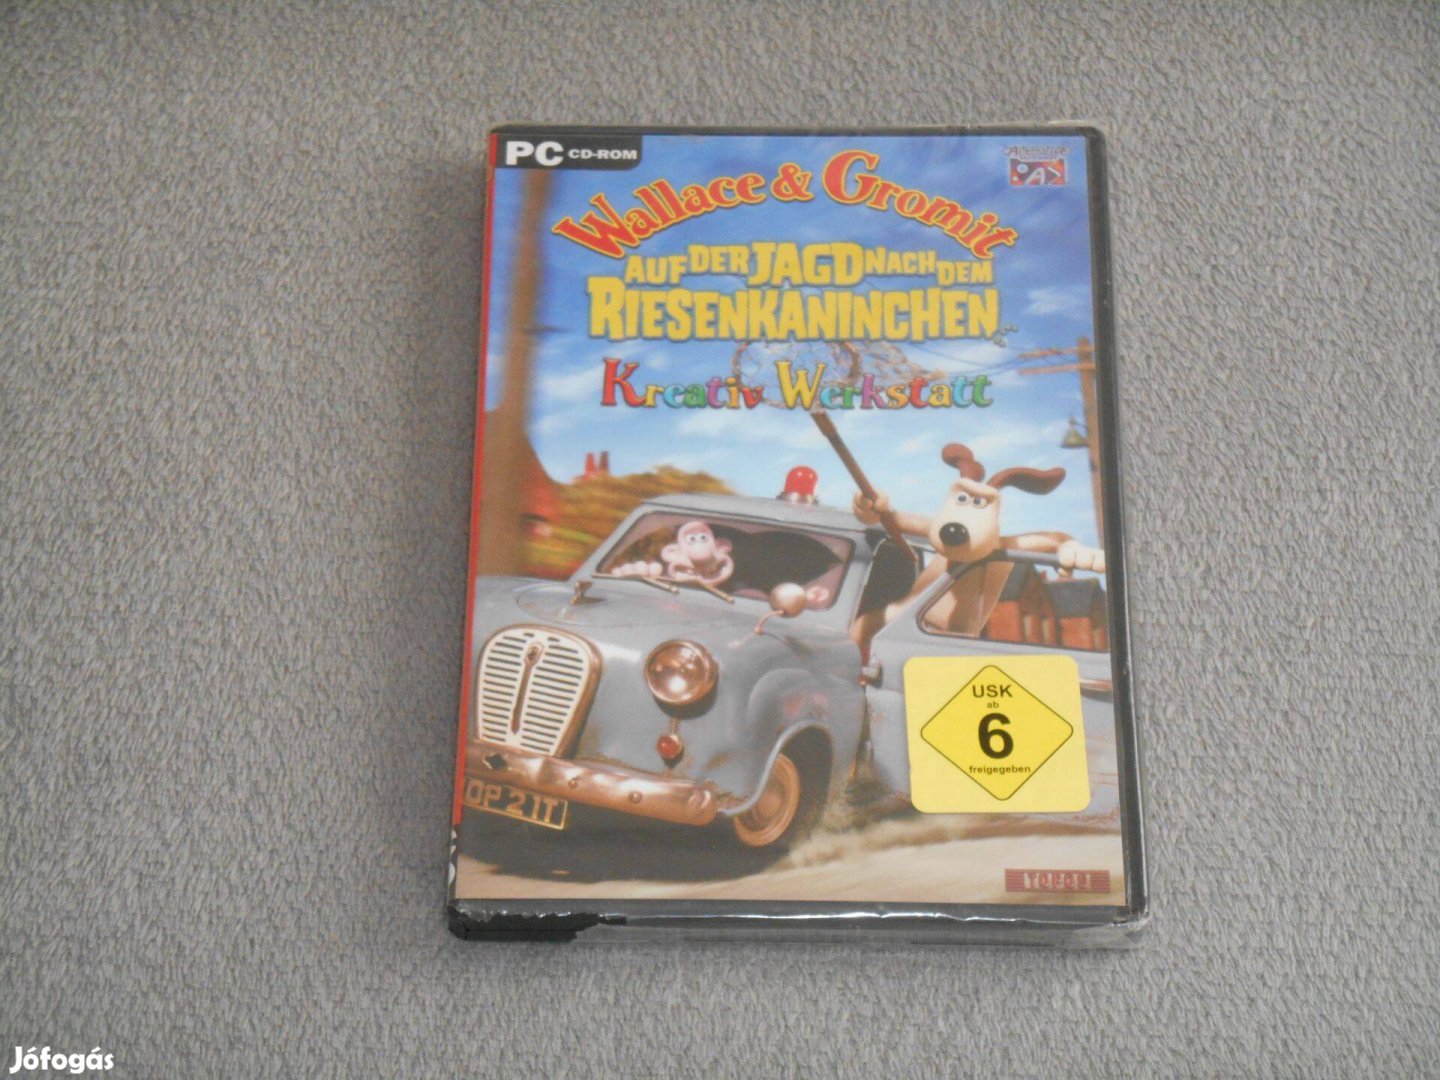 Wallace & Gromit auf der Jagd nach dem Riesenkaninchen PC játék